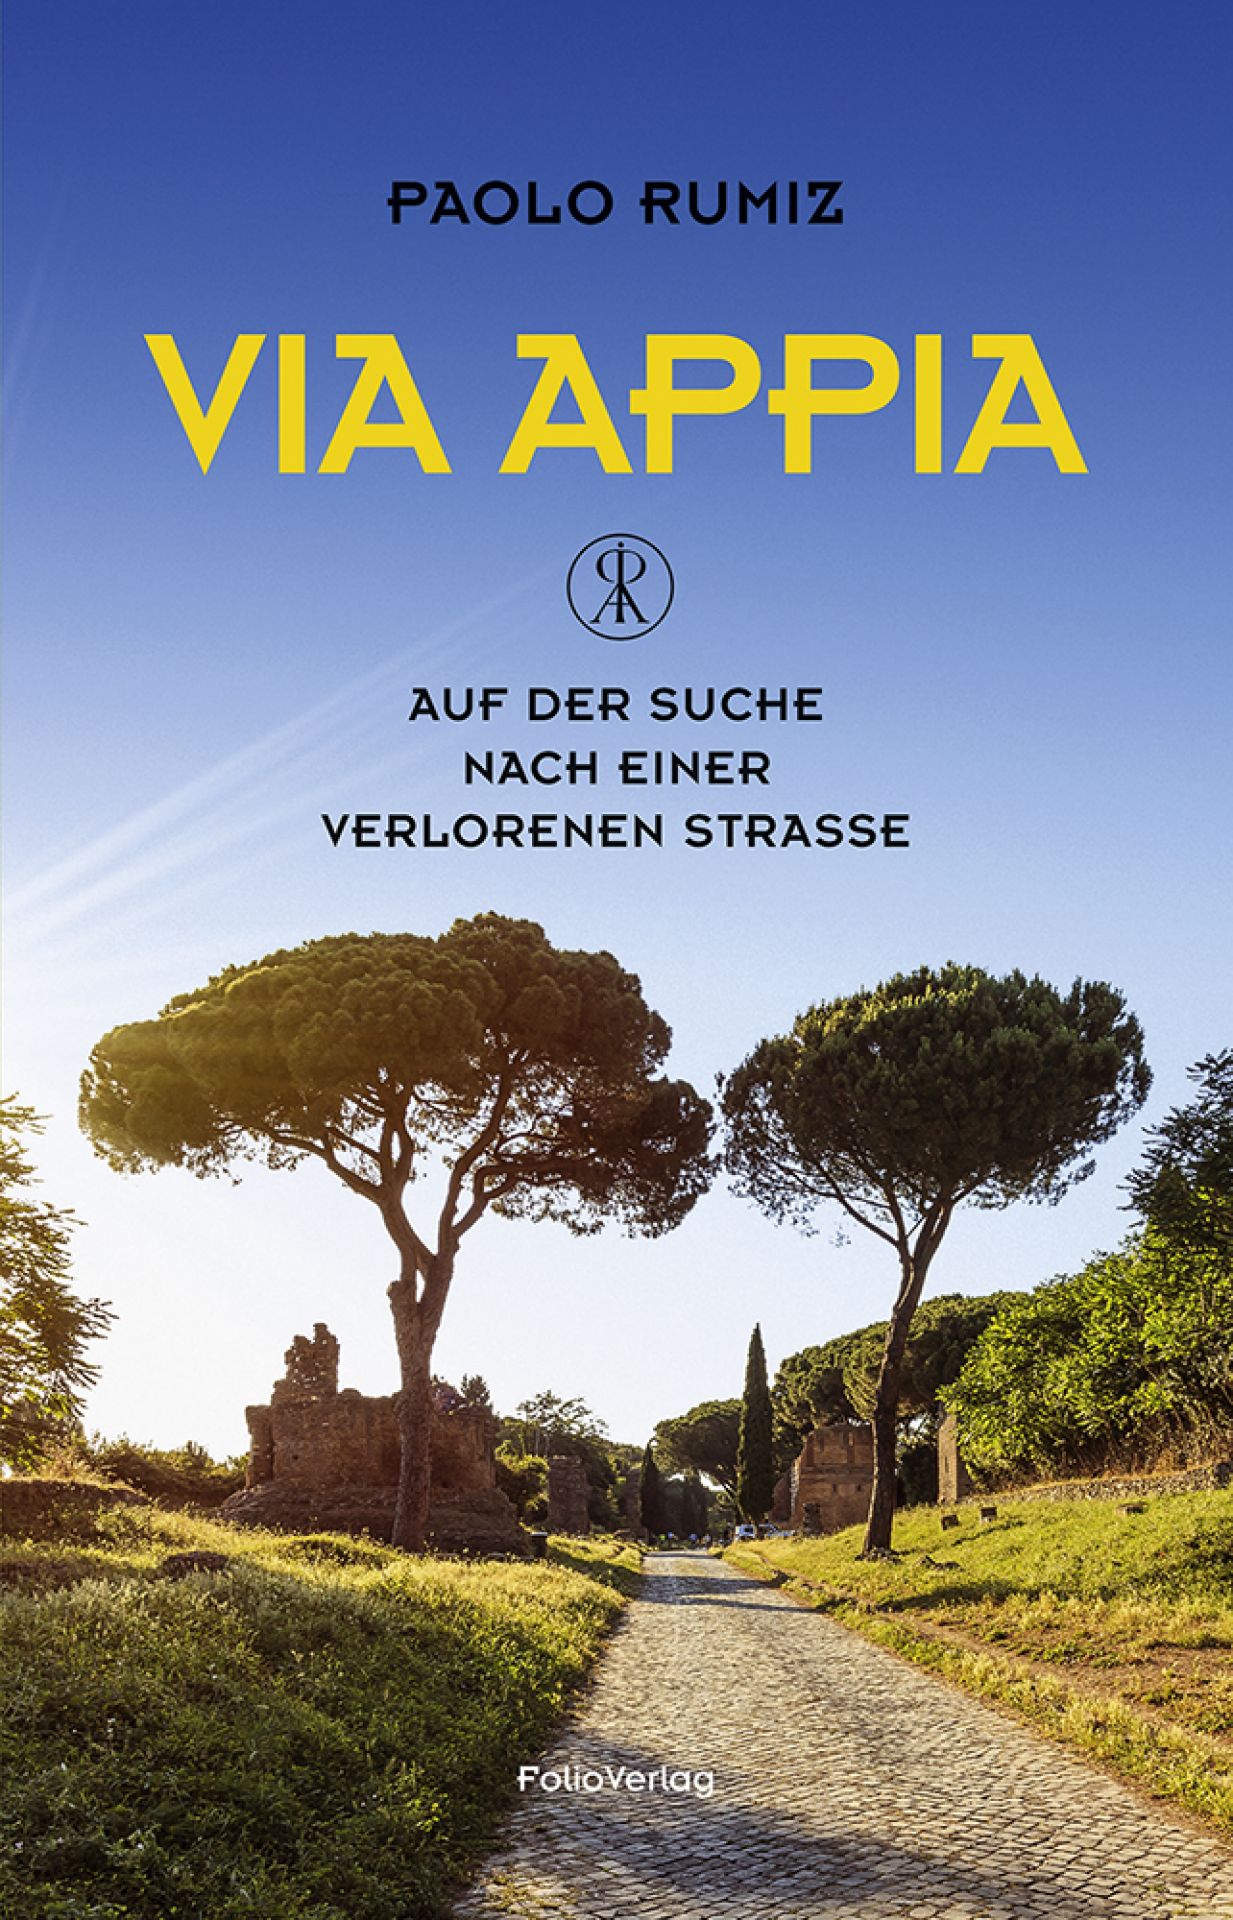 Via Appia ©Folio Verlag